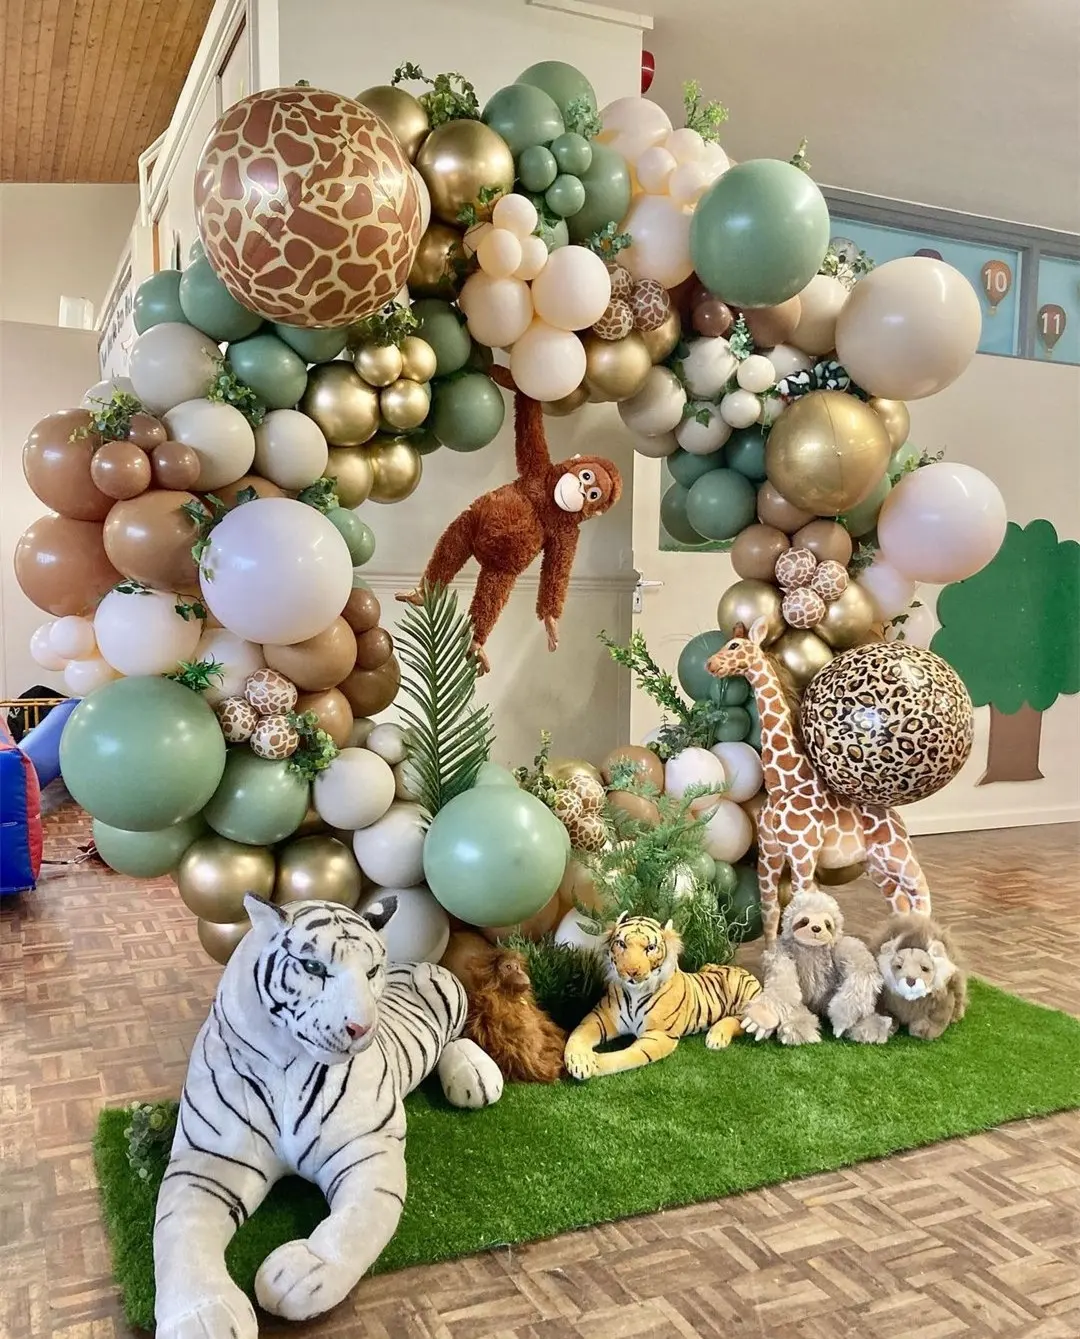 Kit nude safari verde e marrom, estampa de animais selvagens, kit para aniversário, decoração de festa ao ar livre